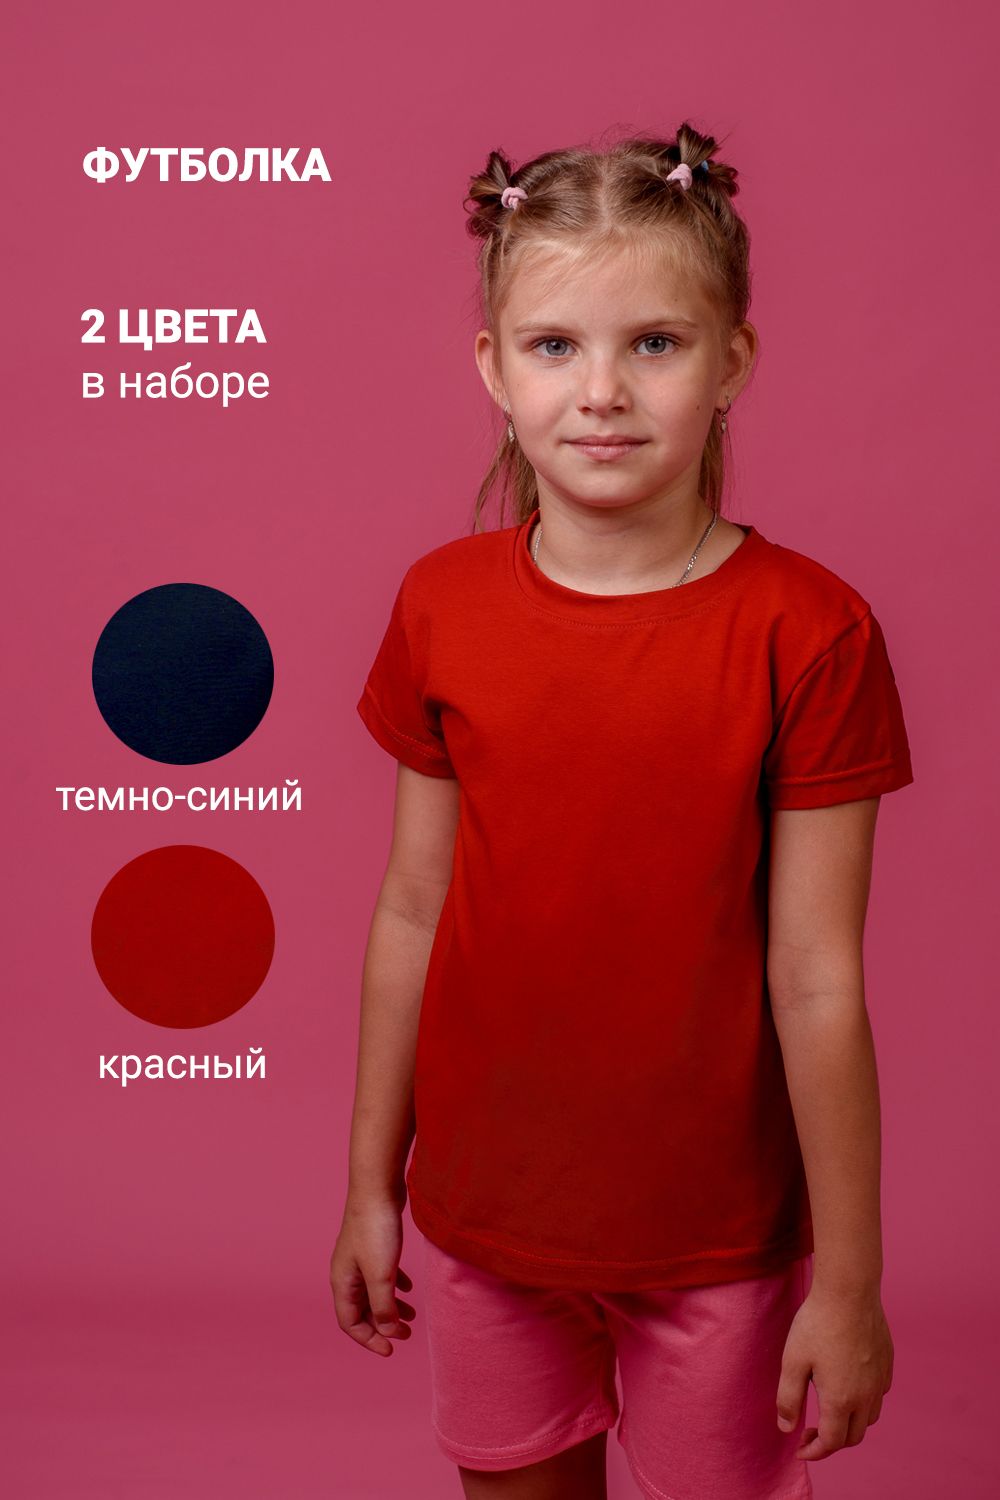 Футболка 11705 детская (набор 2шт) - темно-синий+красный